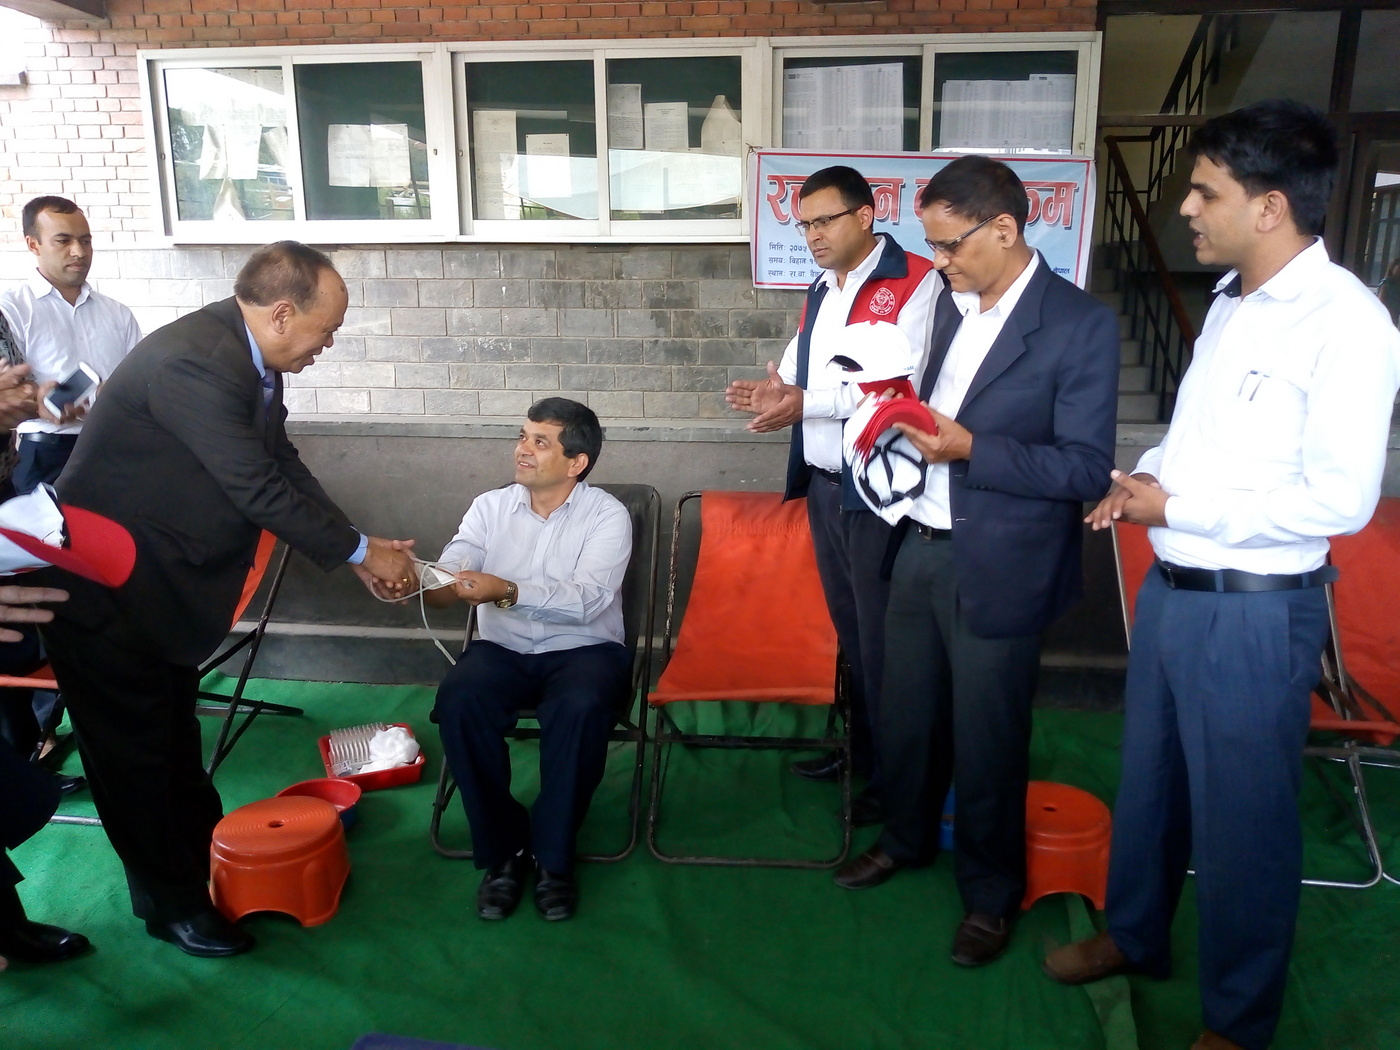 राष्ट्रिय वाणिज्य बैंक कर्मचारी संघ नेपालद्धारा रक्तदान कार्यक्रम आयोजना